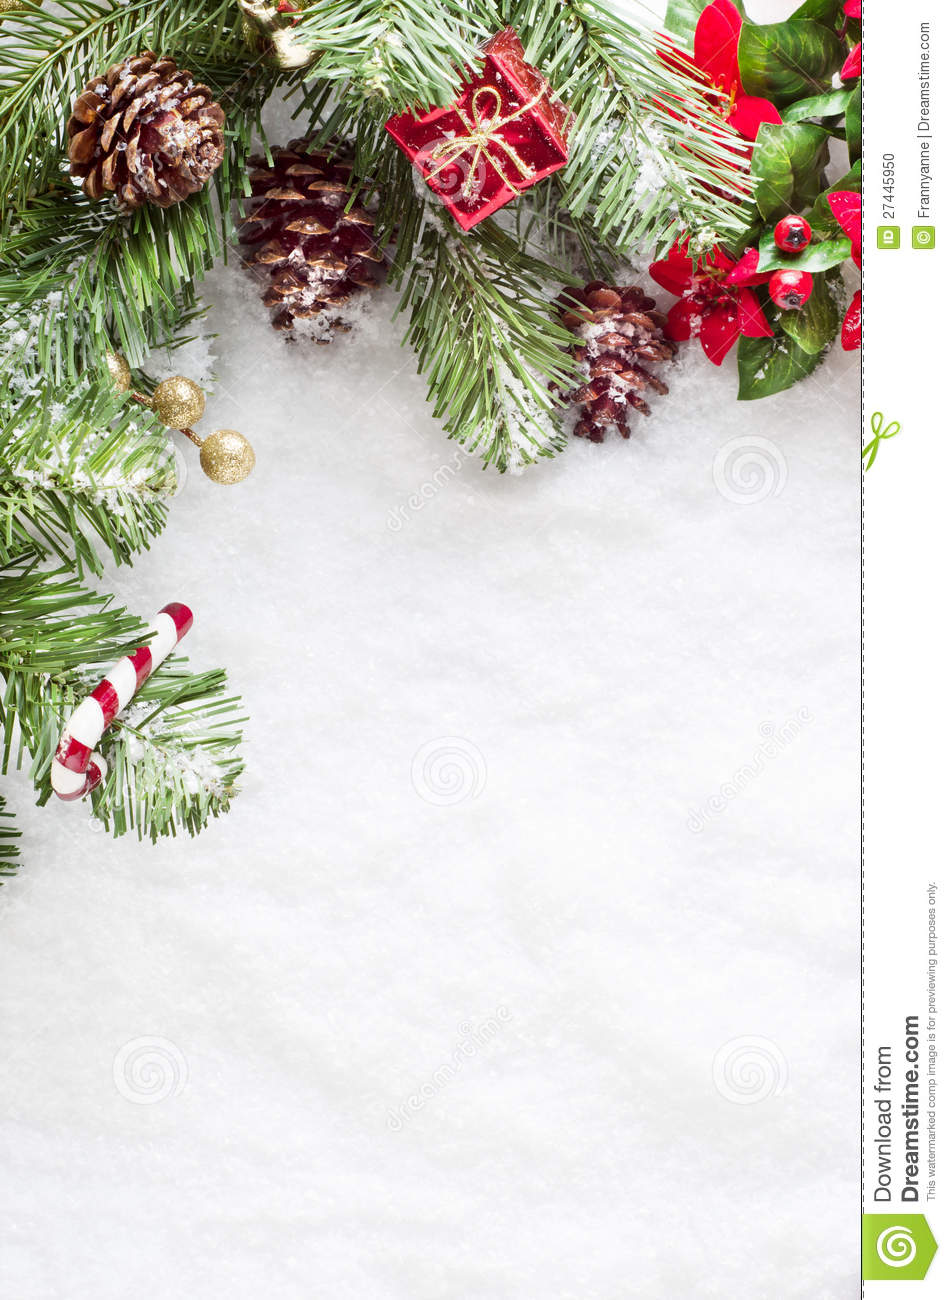 Hãy tải ngay ảnh cho máy tính desktop của bạn với chủ đề Giáng sinh hoàn toàn miễn phí. Với những hình ảnh lung linh, tươi vui, bạn sẽ ngay lập tức cảm nhận được không khí Giáng sinh đang ở rất gần. Hãy để hình ảnh Giáng sinh quyến rũ dẫn đường cho bạn đến một mùa lễ hội đầy ấm áp và đầy niềm vui.